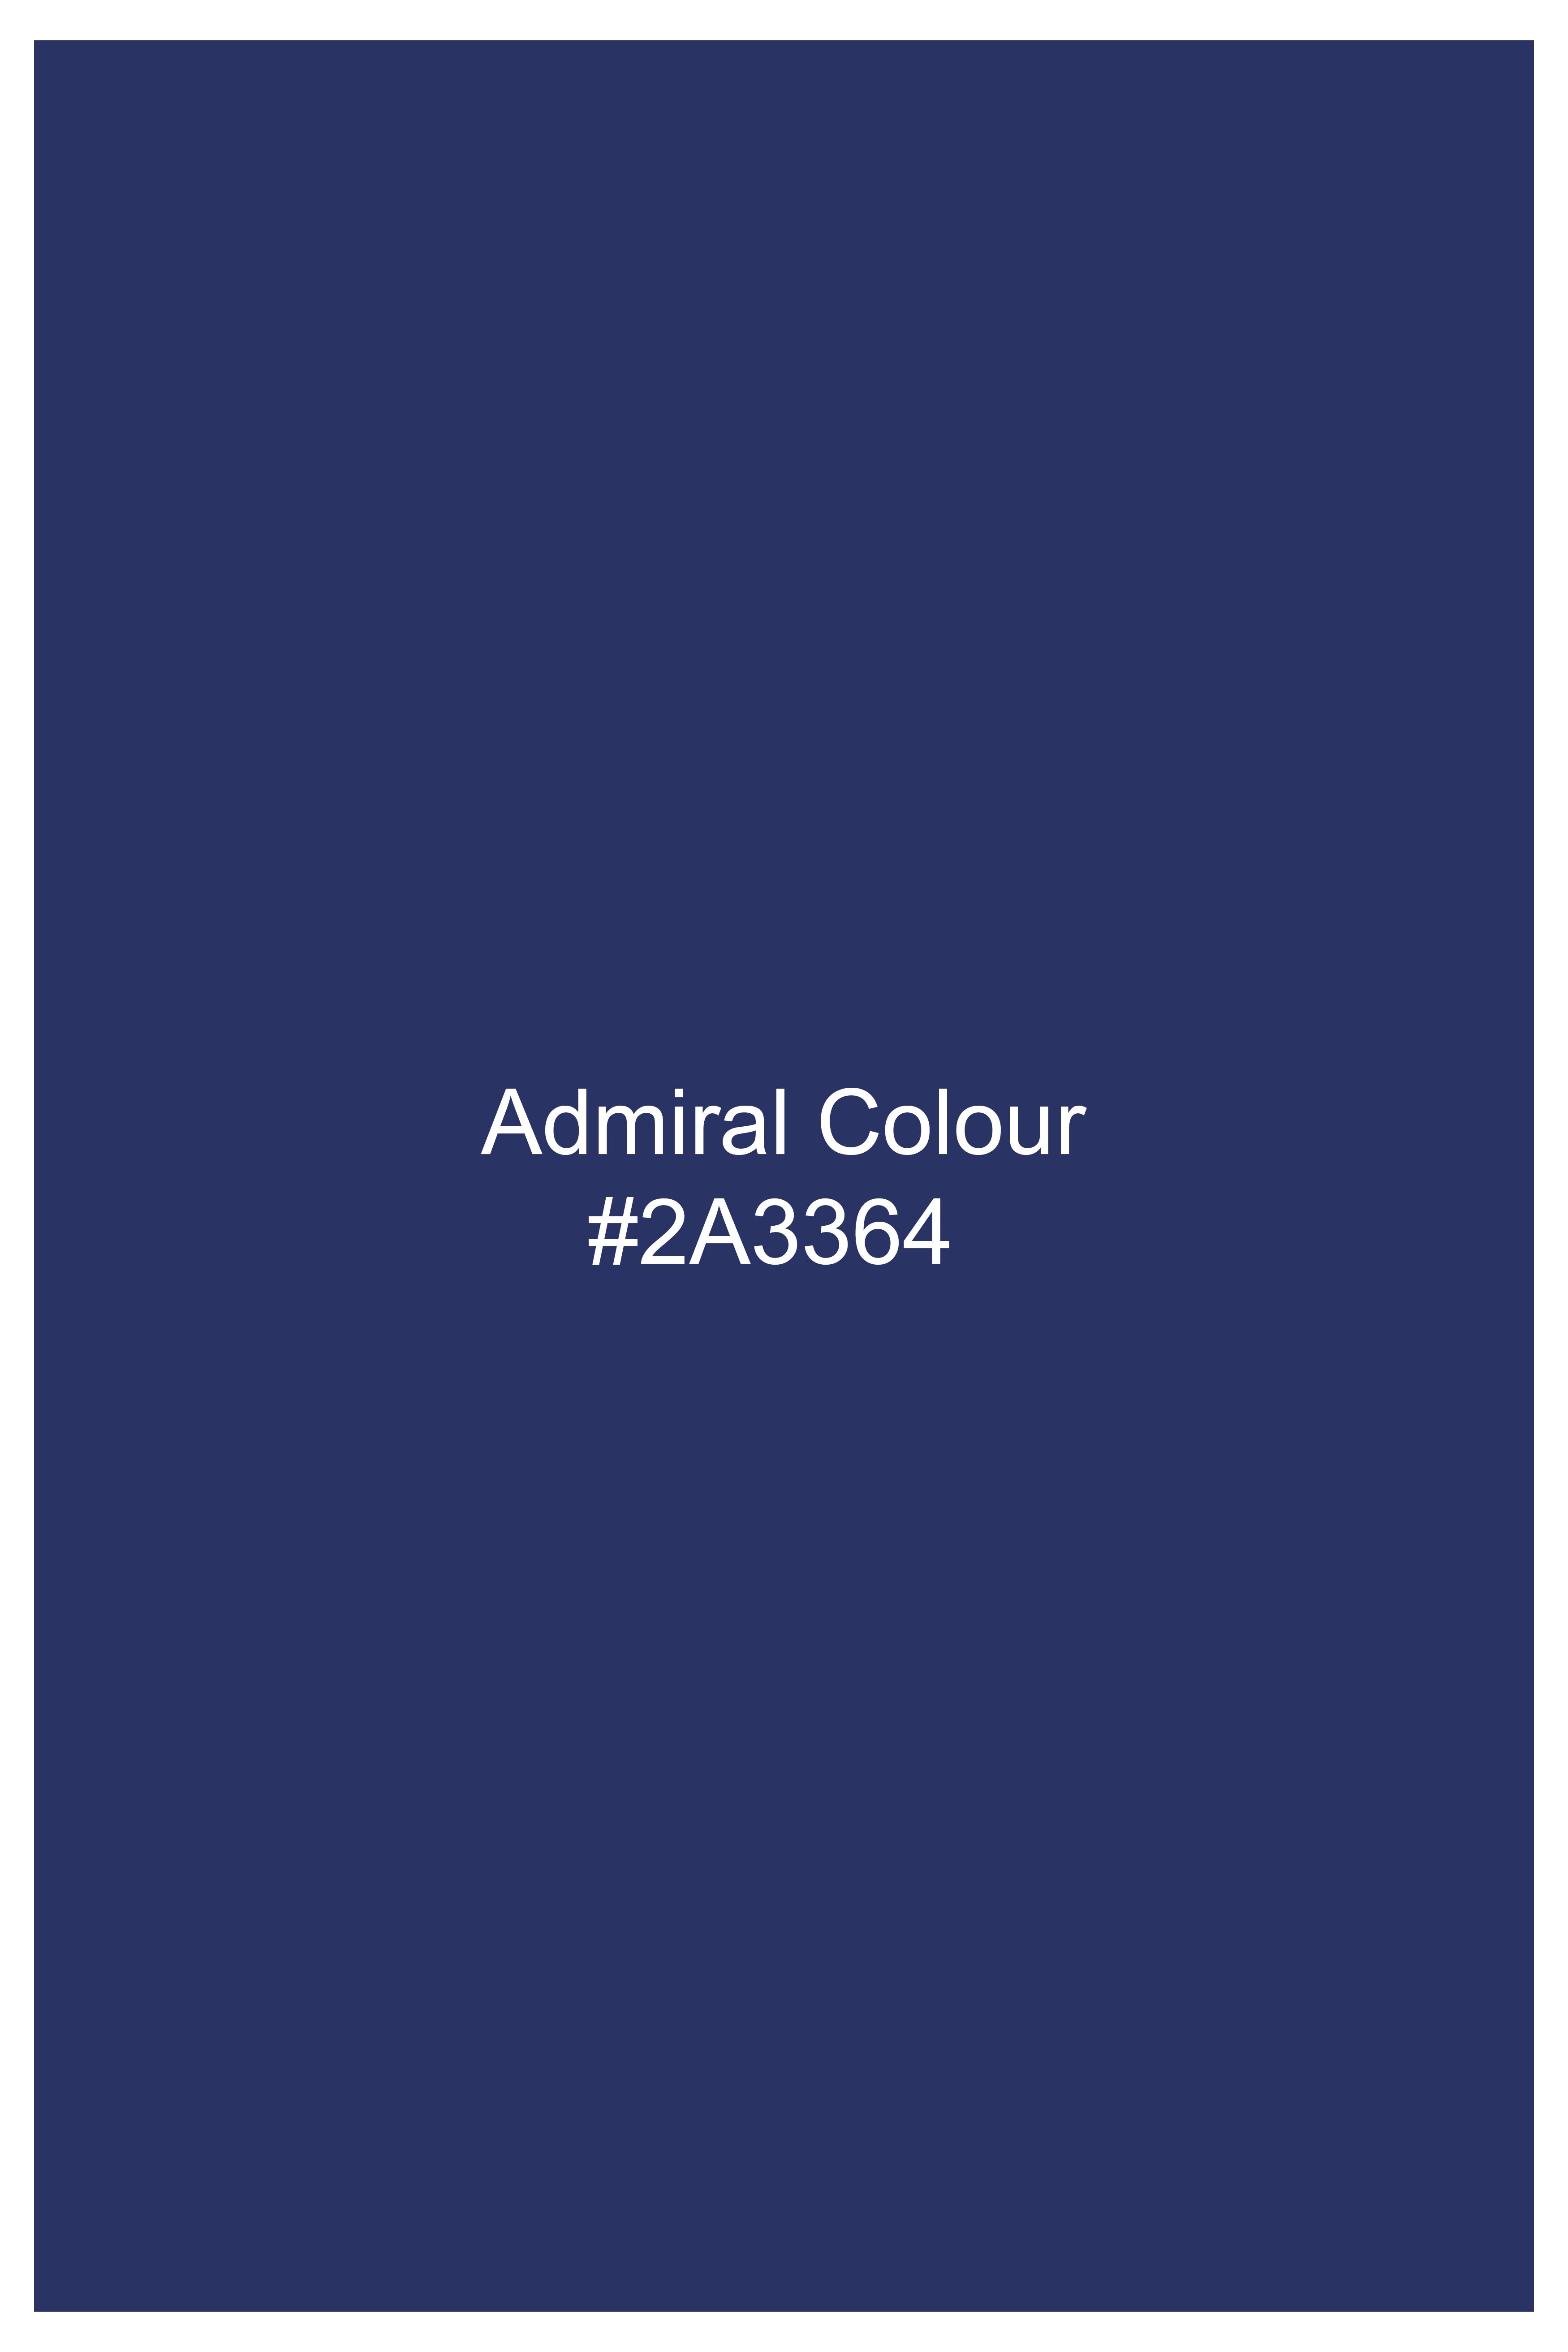 Admiral Blue Wool Rich Pant T3057-28, T3057-30, T3057-32, T3057-34, T3057-36, T3057-38, T3057-40, T3057-42, T3057-44